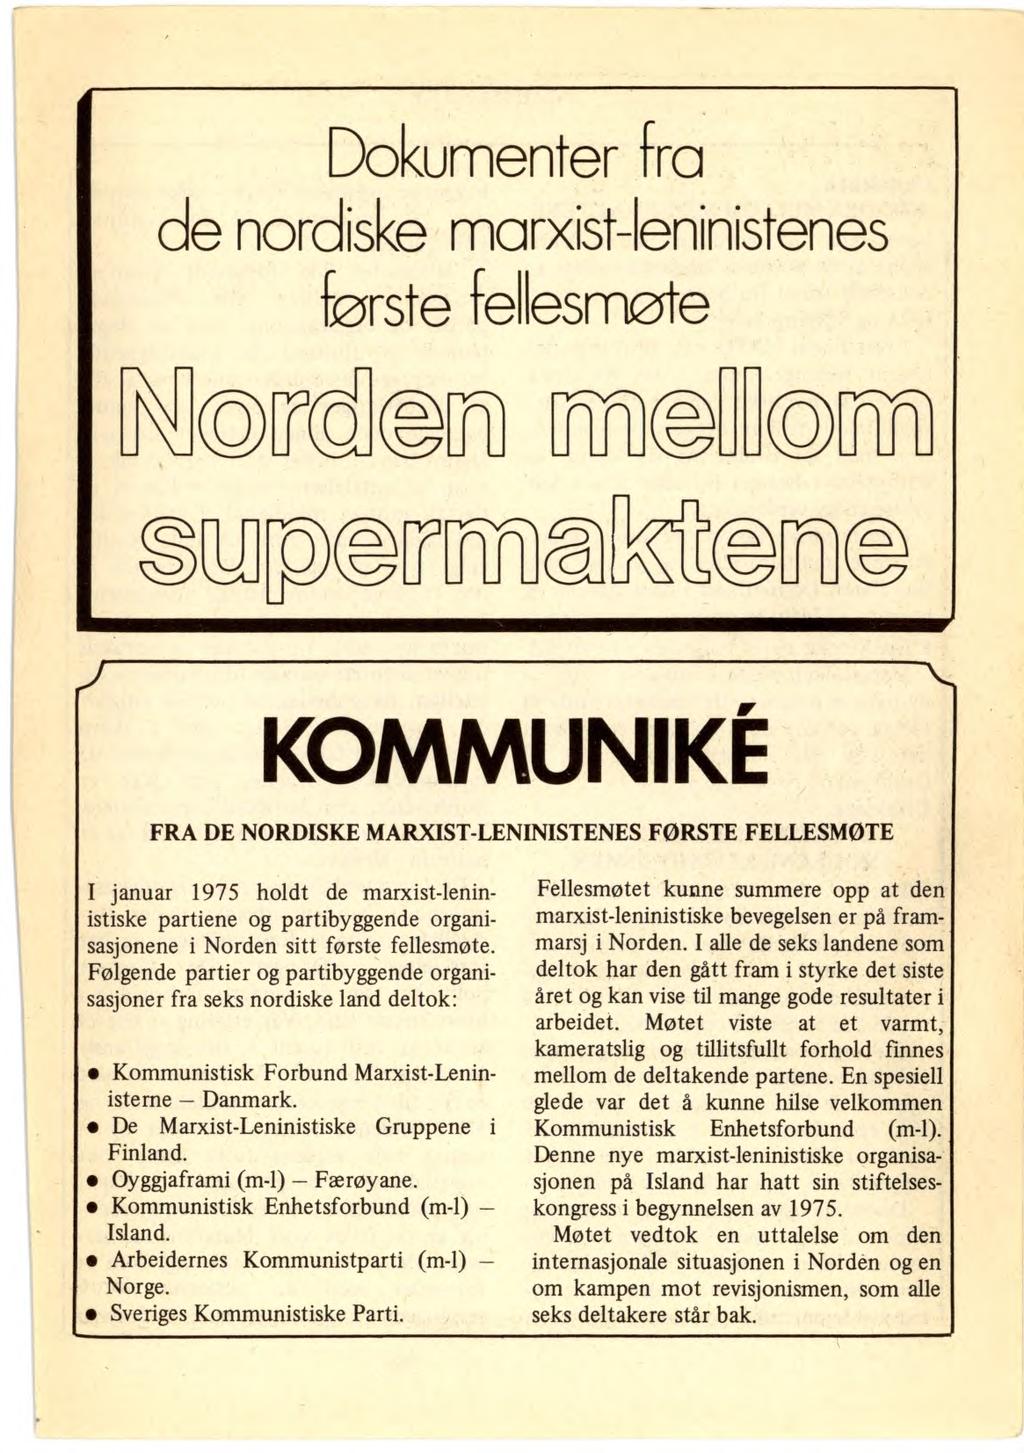 Dokumenter fra ce norciske marxist-leninistenes første fellesmøte an KOMMUNIKE FRA DE NORDISKE MARXIST-LENINISTENES FØRSTE FELLESMØTE I januar 1975 holdt de marxist-leninistiske partiene og